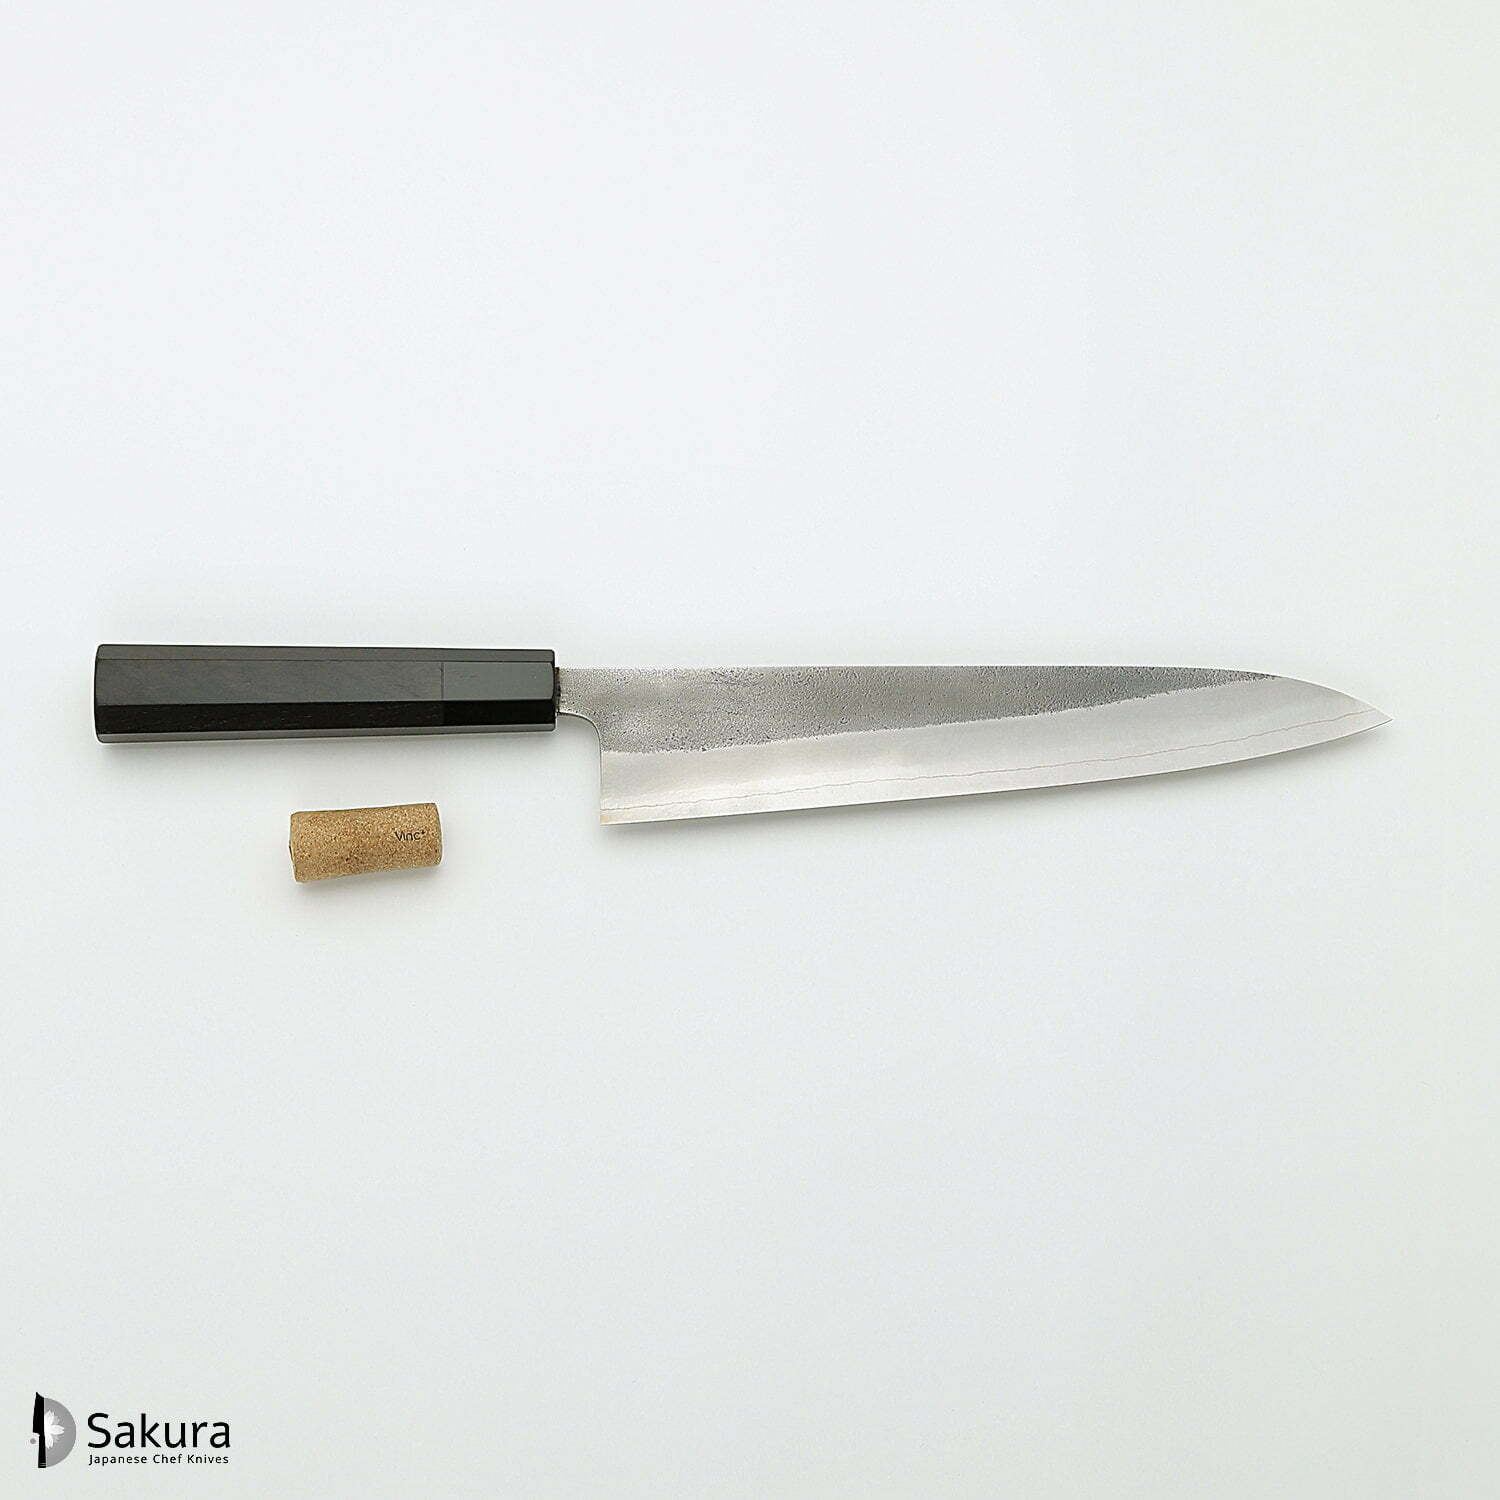 סכין שף רב-תכליתית גִּיוּטוֹ 240מ״מ מחושלת בעבודת יד 3 שכבות: פלדת פחמן יפנית מתקדמת מסוג SKD עטופה פלדת אל-חלד גימור קורורוצ׳י מט חיספוס טבעי יושיקאנה יפן